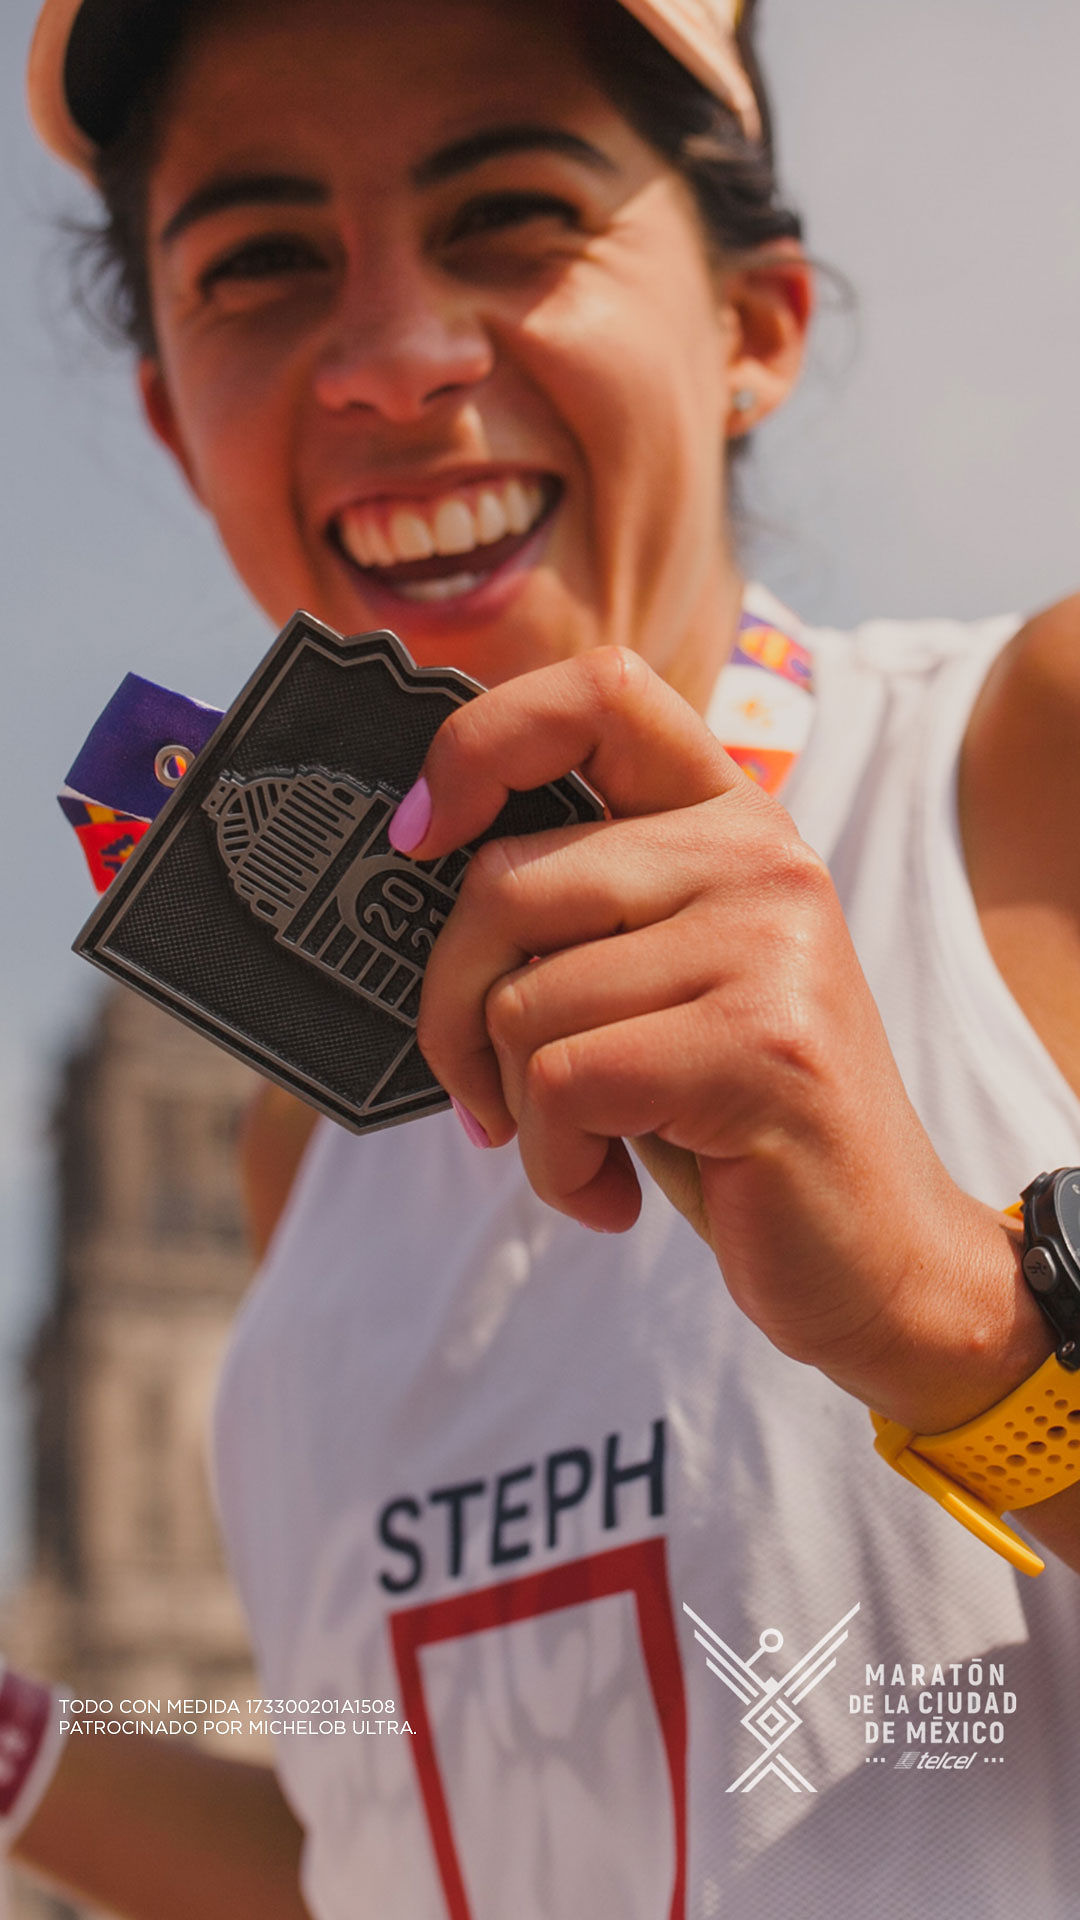 Corredores con medalla maratón